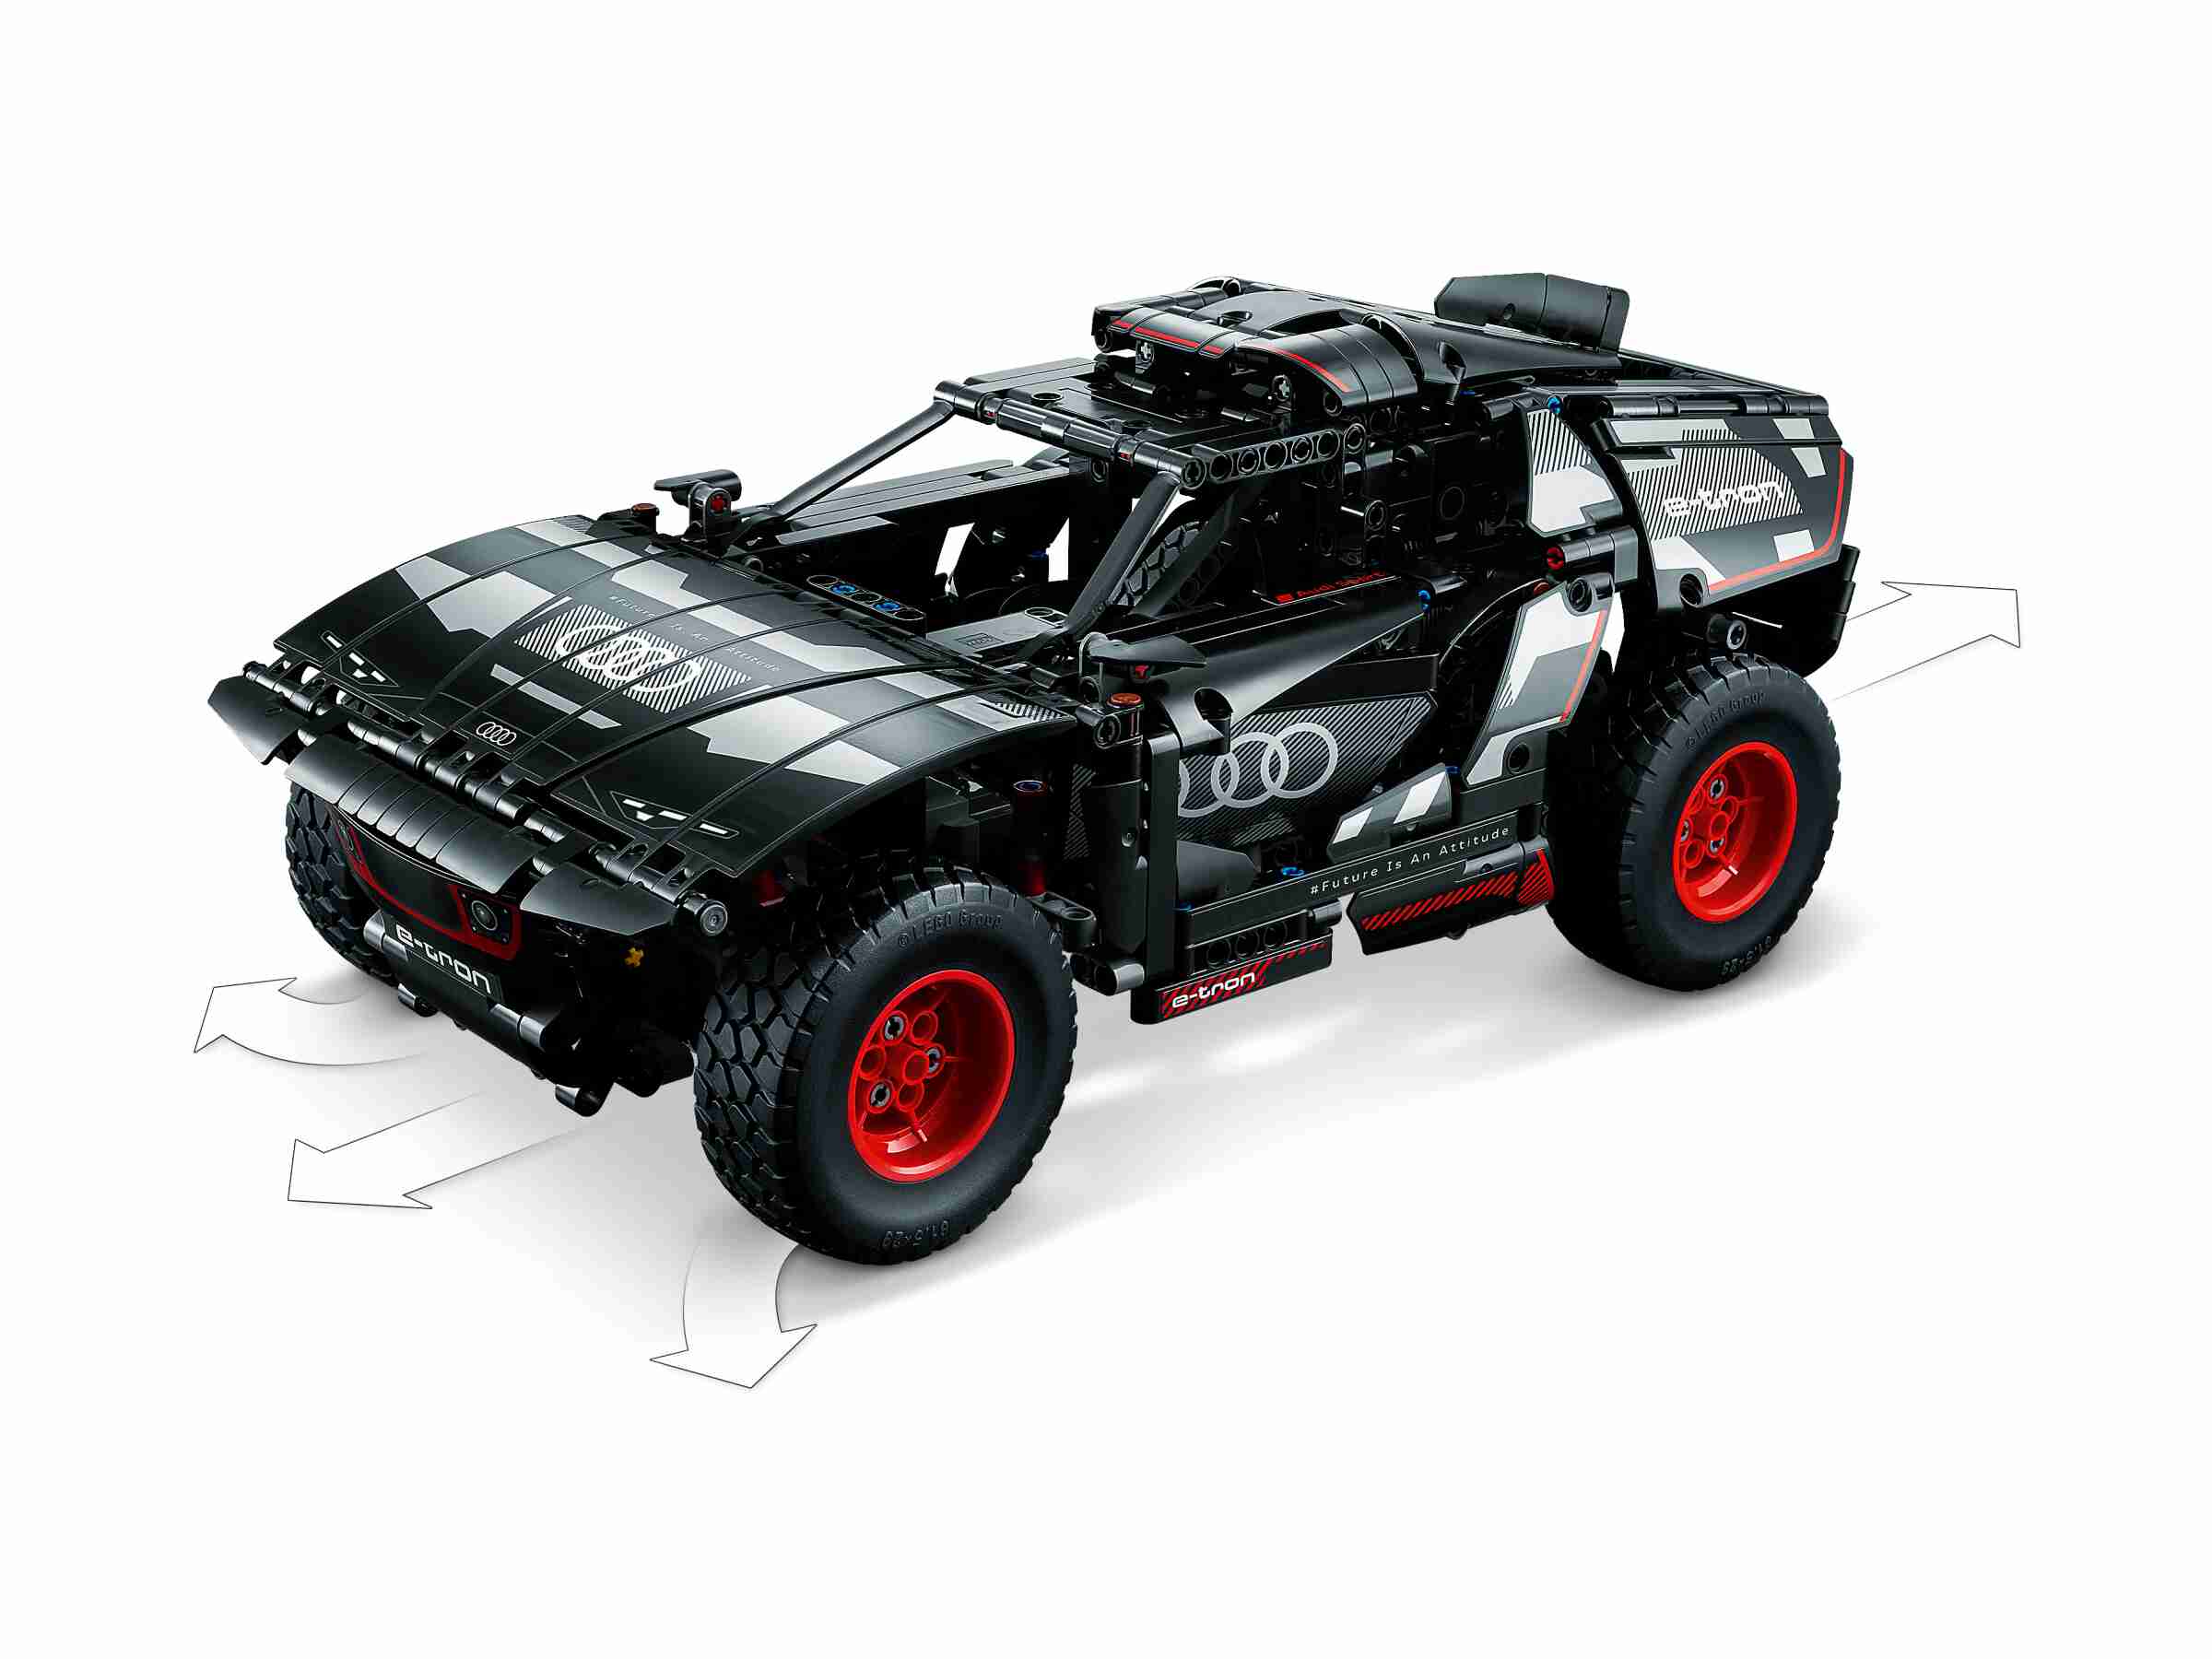 LEGO 42160 Technic Audi RS Q e-tron, Ferngesteuerte Funktionen, CONTROL+ App